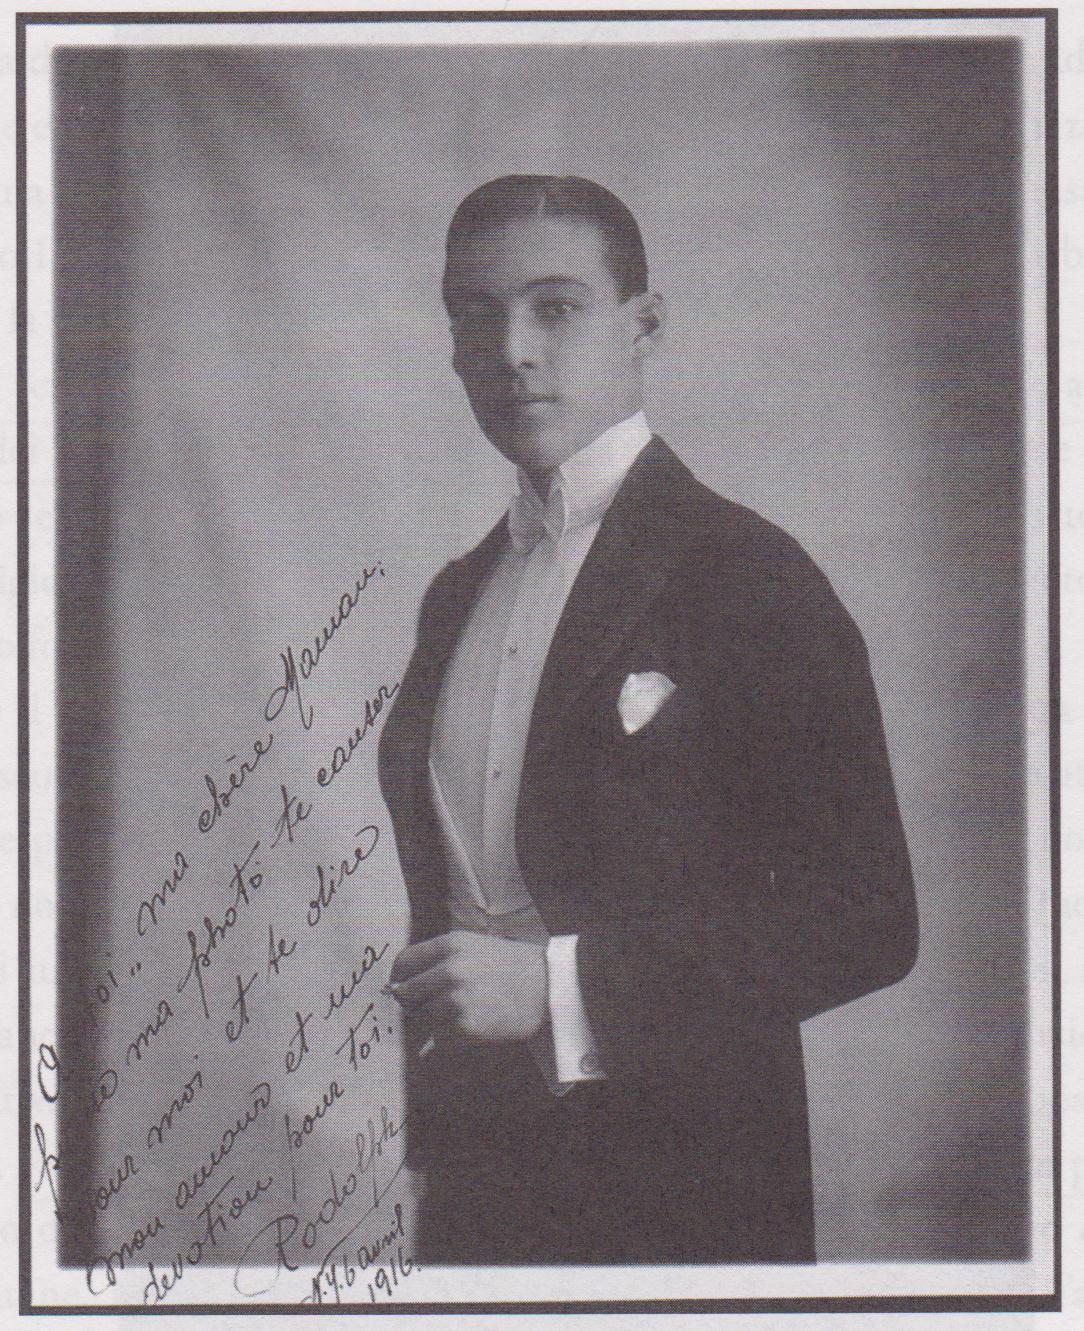 Rodolfo taxi-dancer a New York, 1916